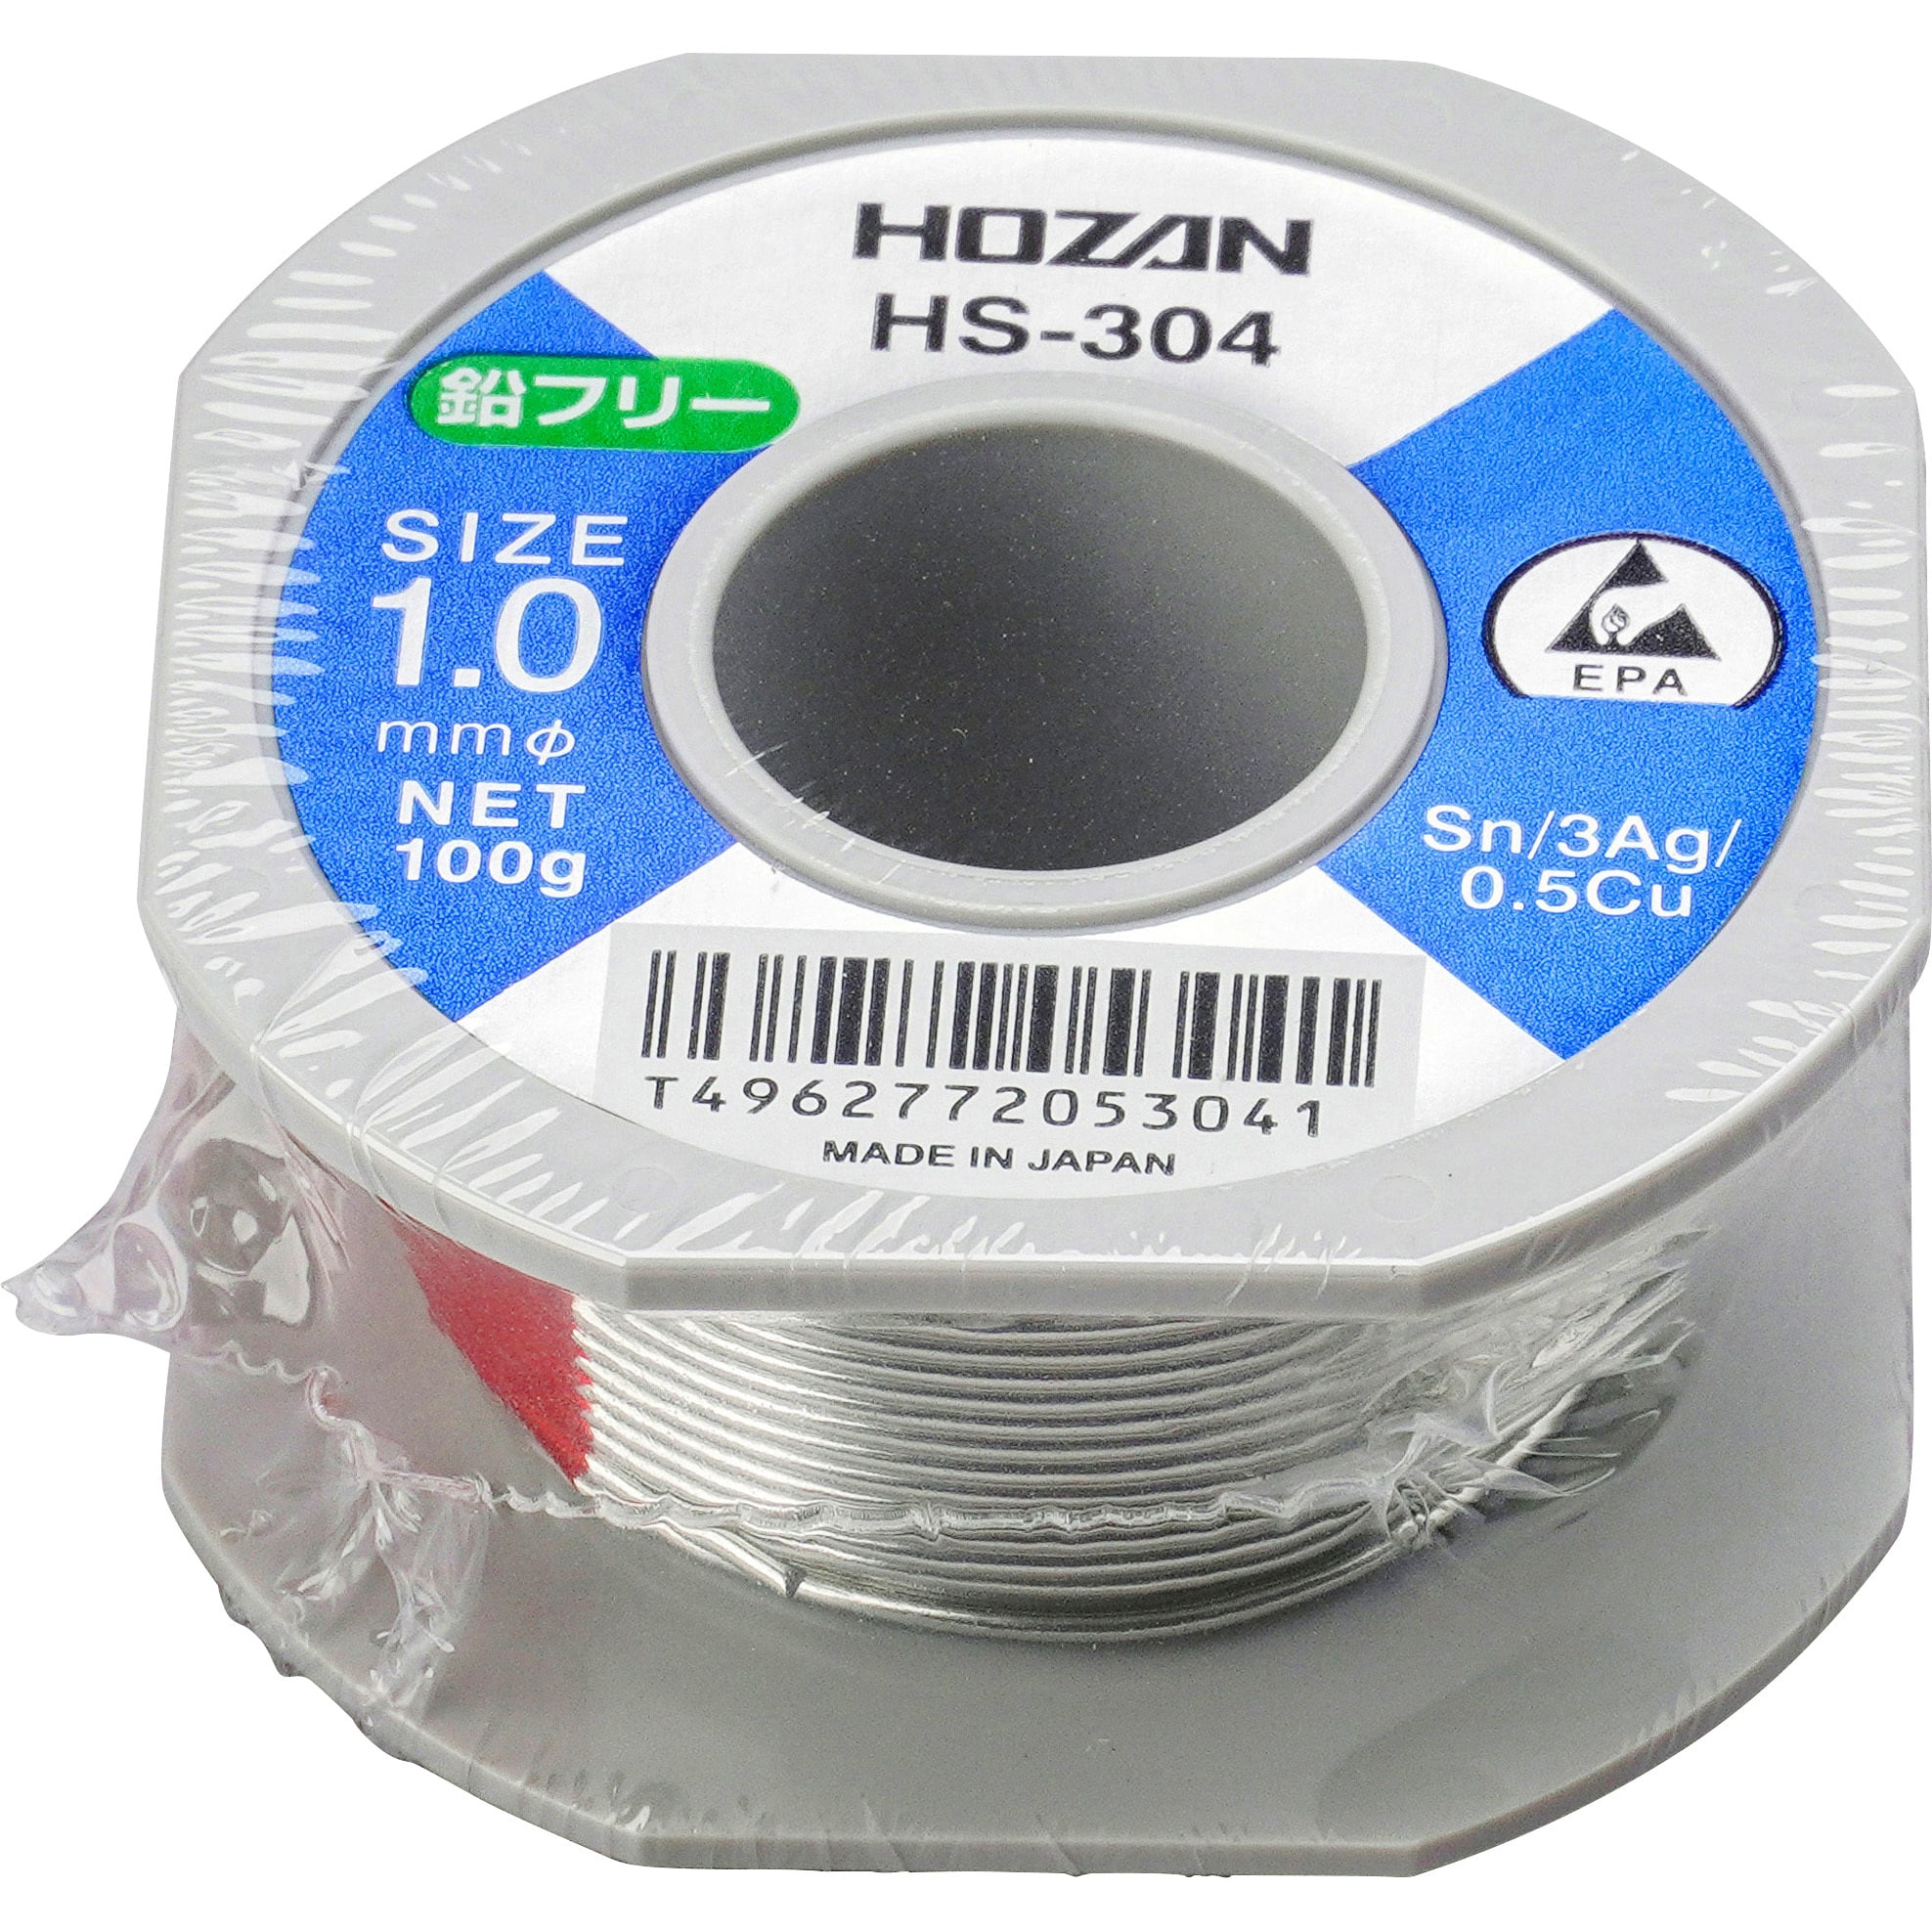 人気SALE定番人気 HOZAN(ホーザン):ハンダ HS-312 鉛フリー(Sn-Ag系) 線径0.6mm HS-312 イチネンネット  PayPayモール店 通販 PayPayモール